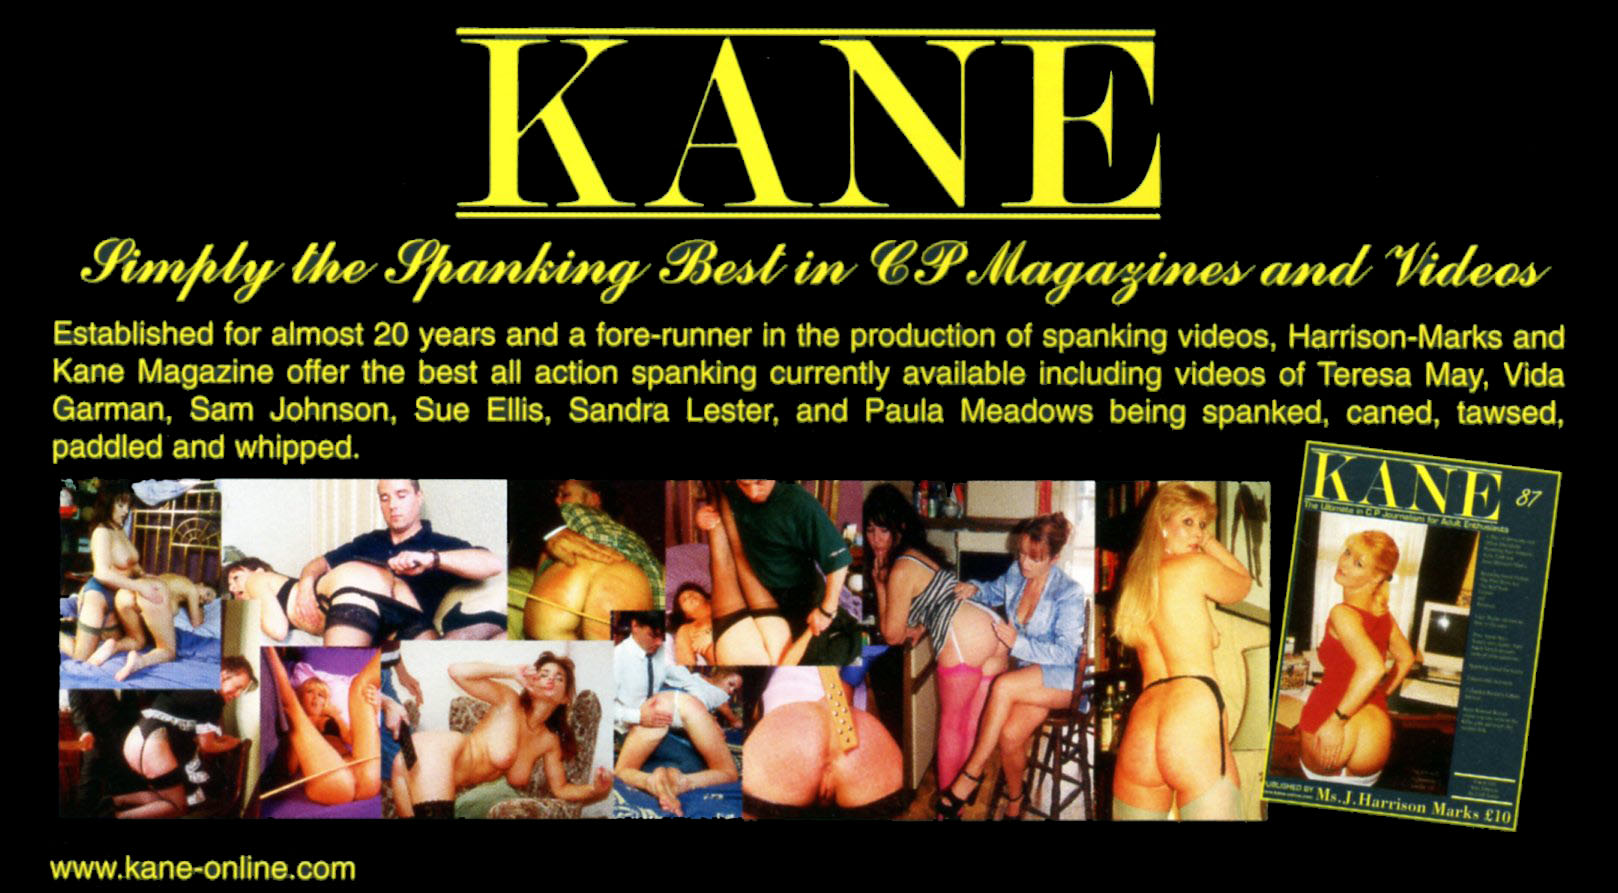 Kane Magazine by Harrision Marks